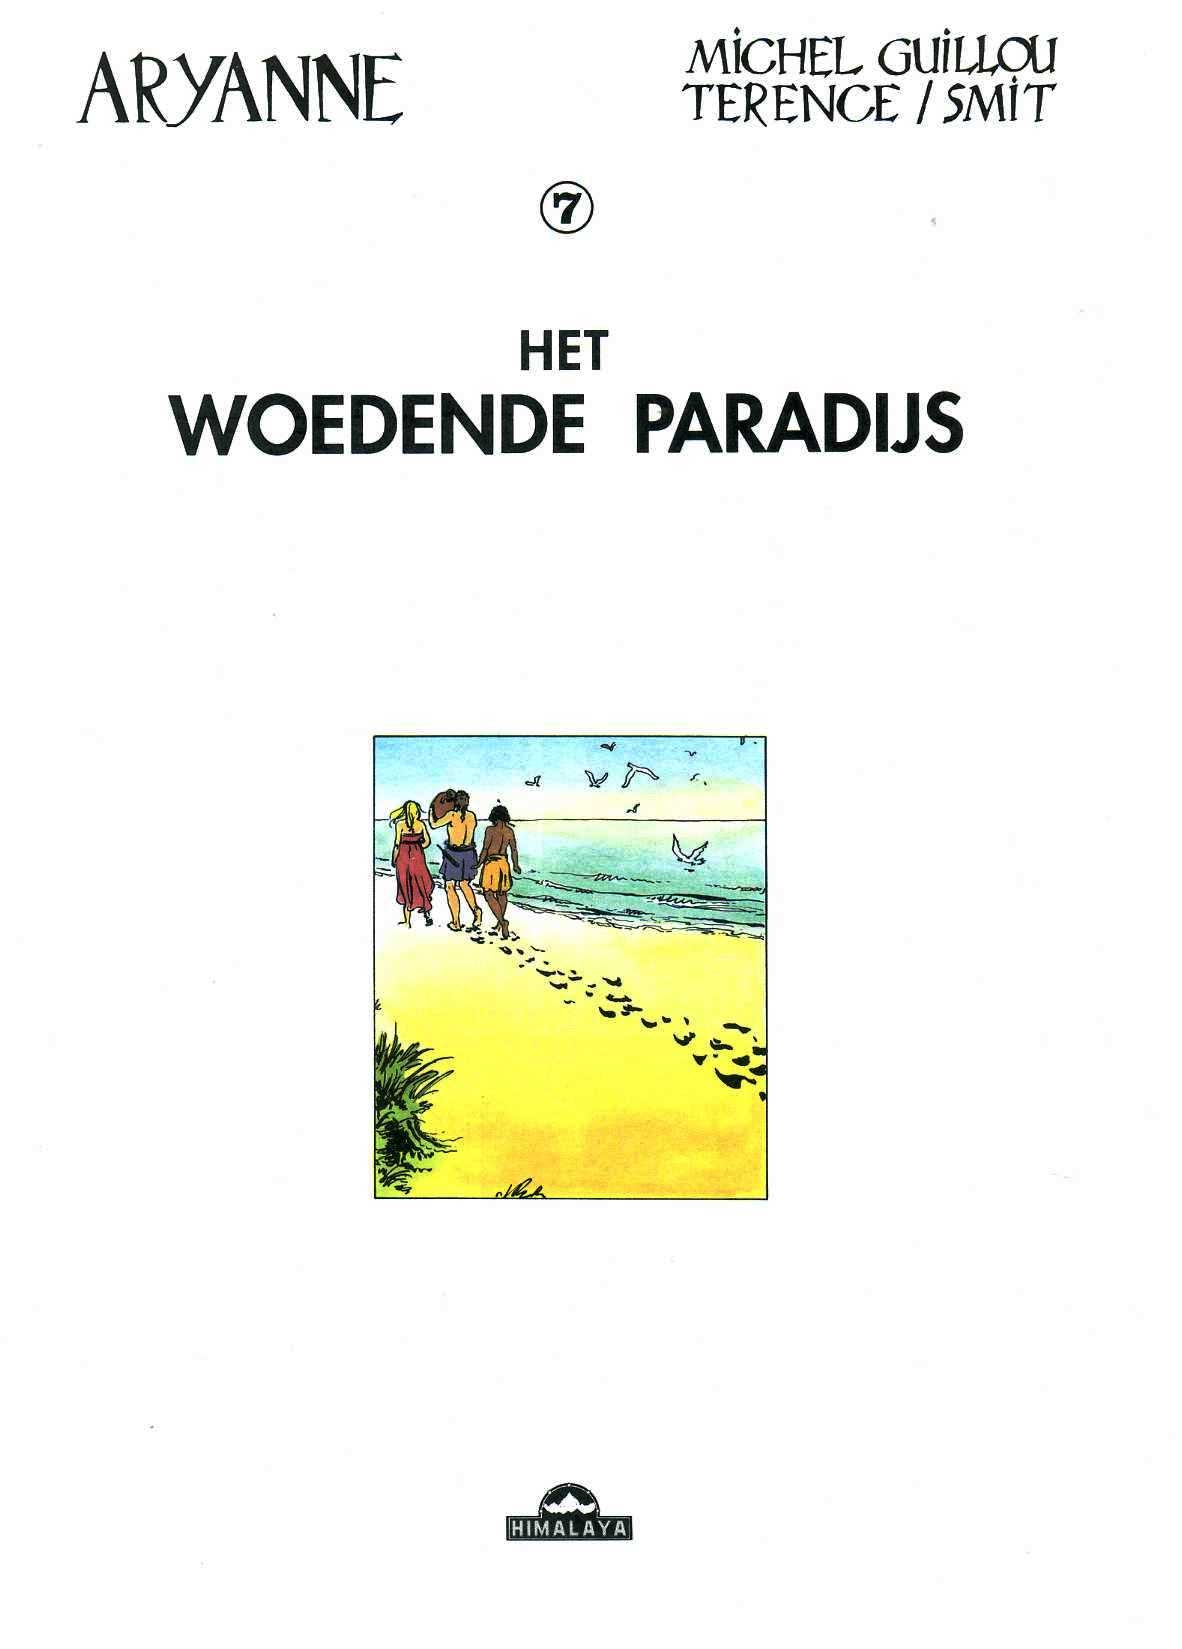 Aryanne - 07 - Het Woedende Paradijs (Dutch) 1